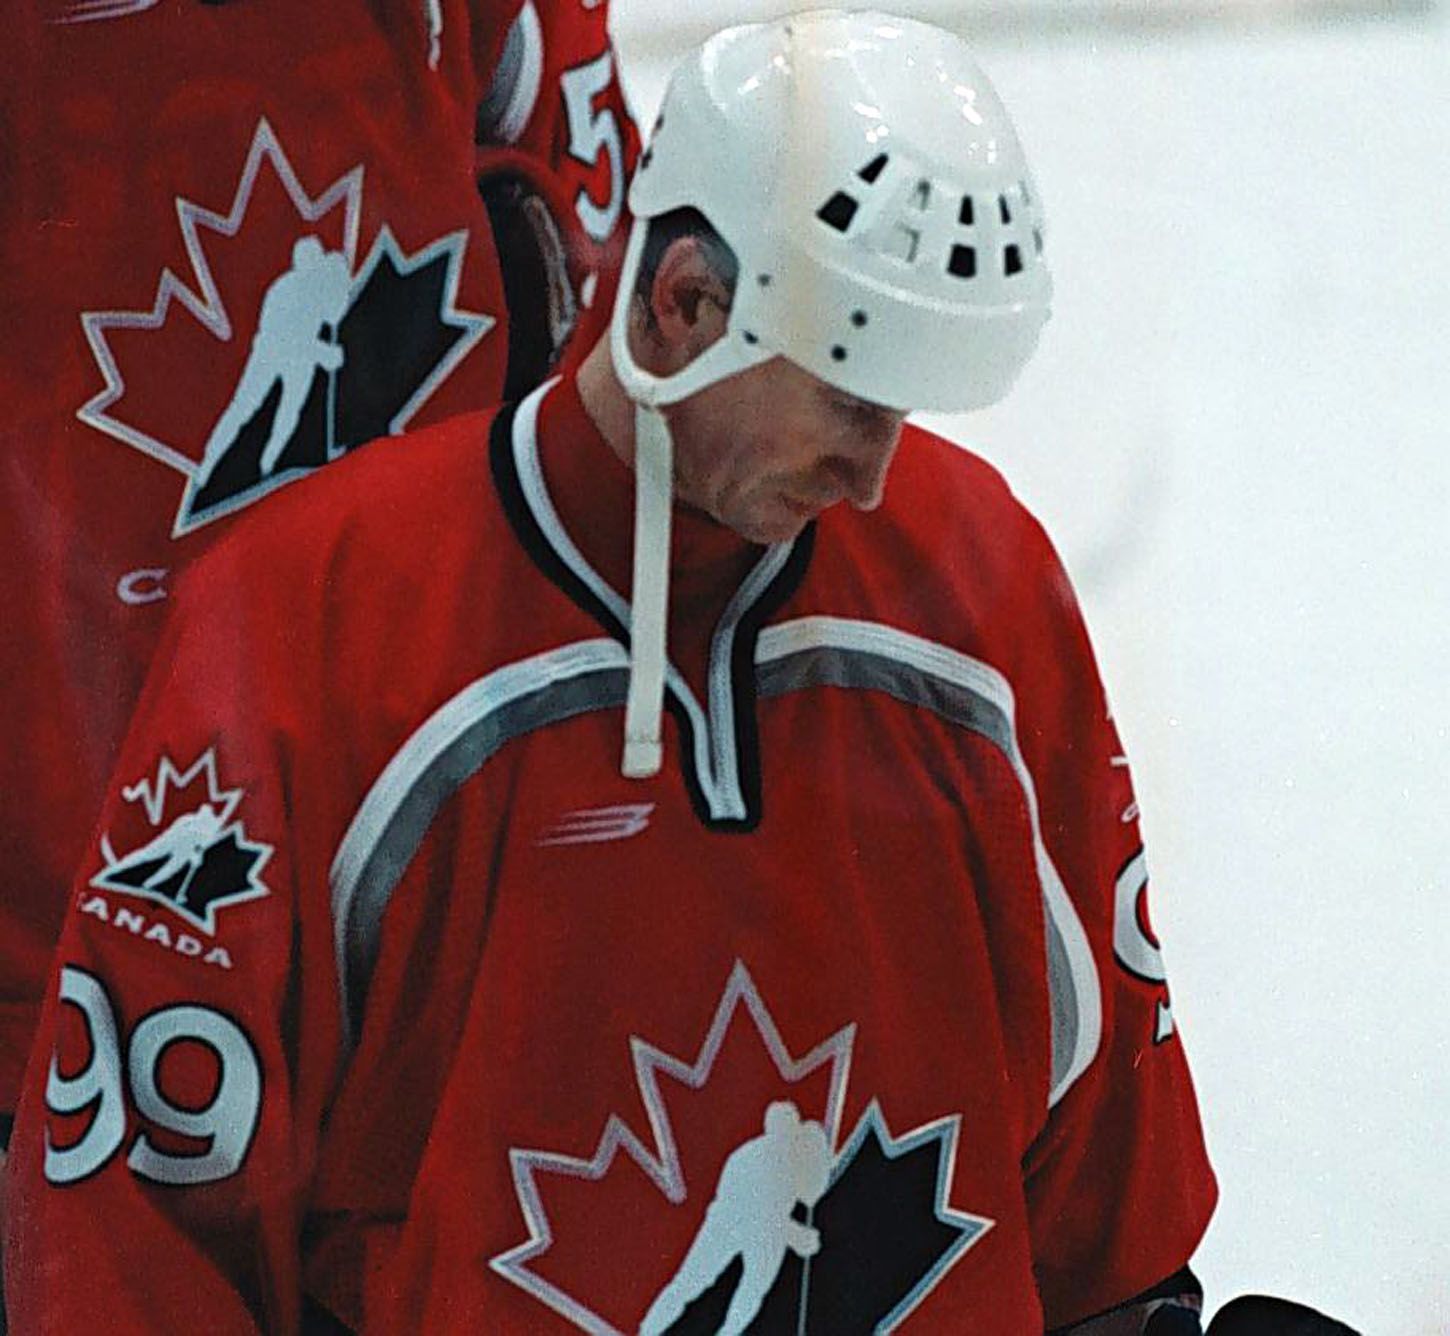 Archivní snímky z ZOH Nagano 1998 - hokej. Gretzky